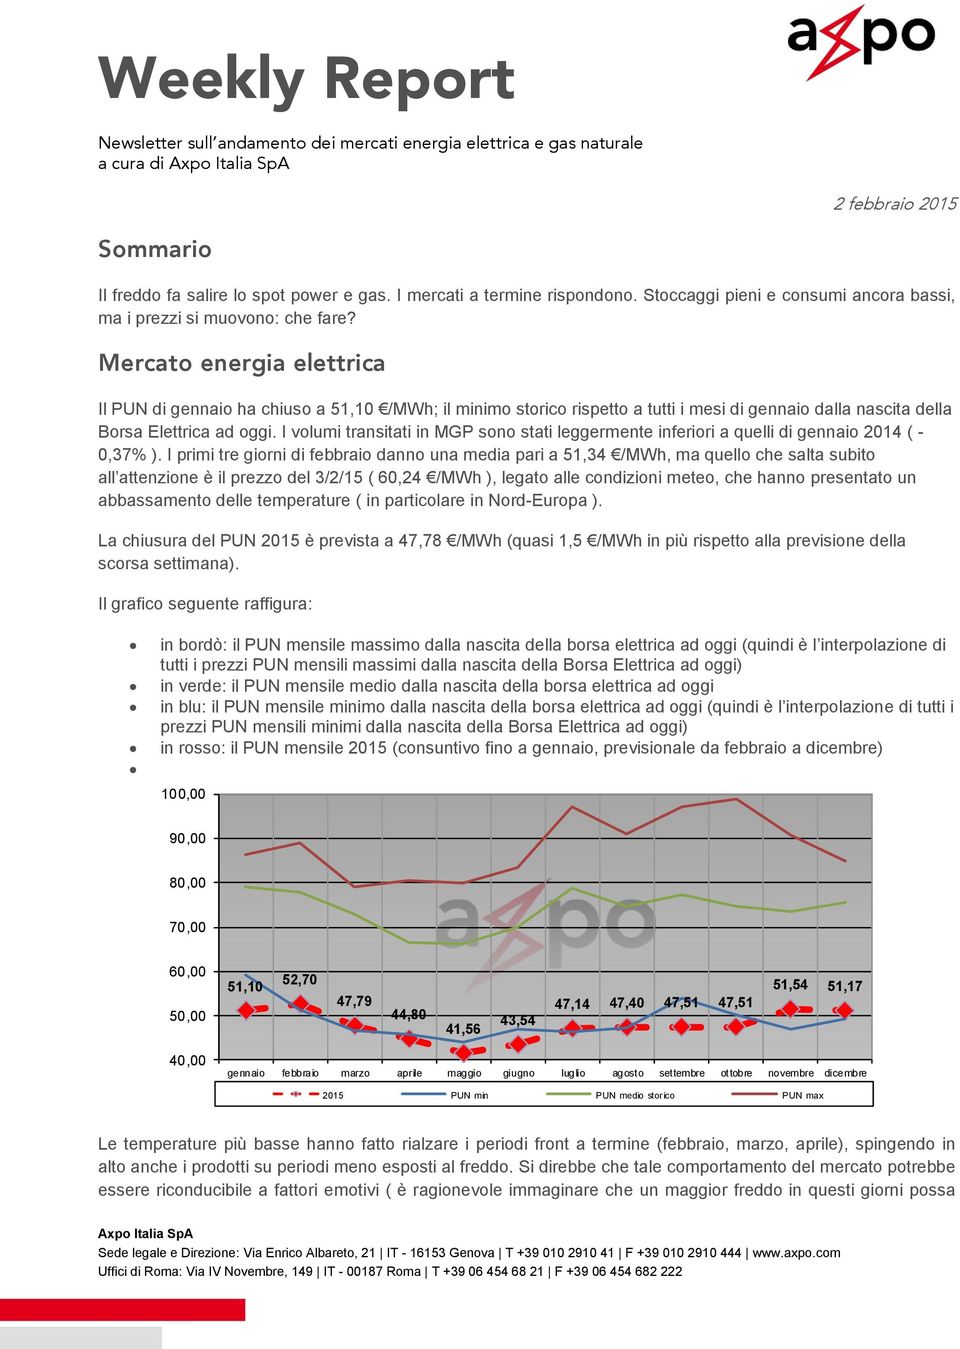 Mercato energia elettrica Il PUN di gennaio ha chiuso a 51,10 /MWh; il minimo storico rispetto a tutti i mesi di gennaio dalla nascita della Borsa Elettrica ad oggi.